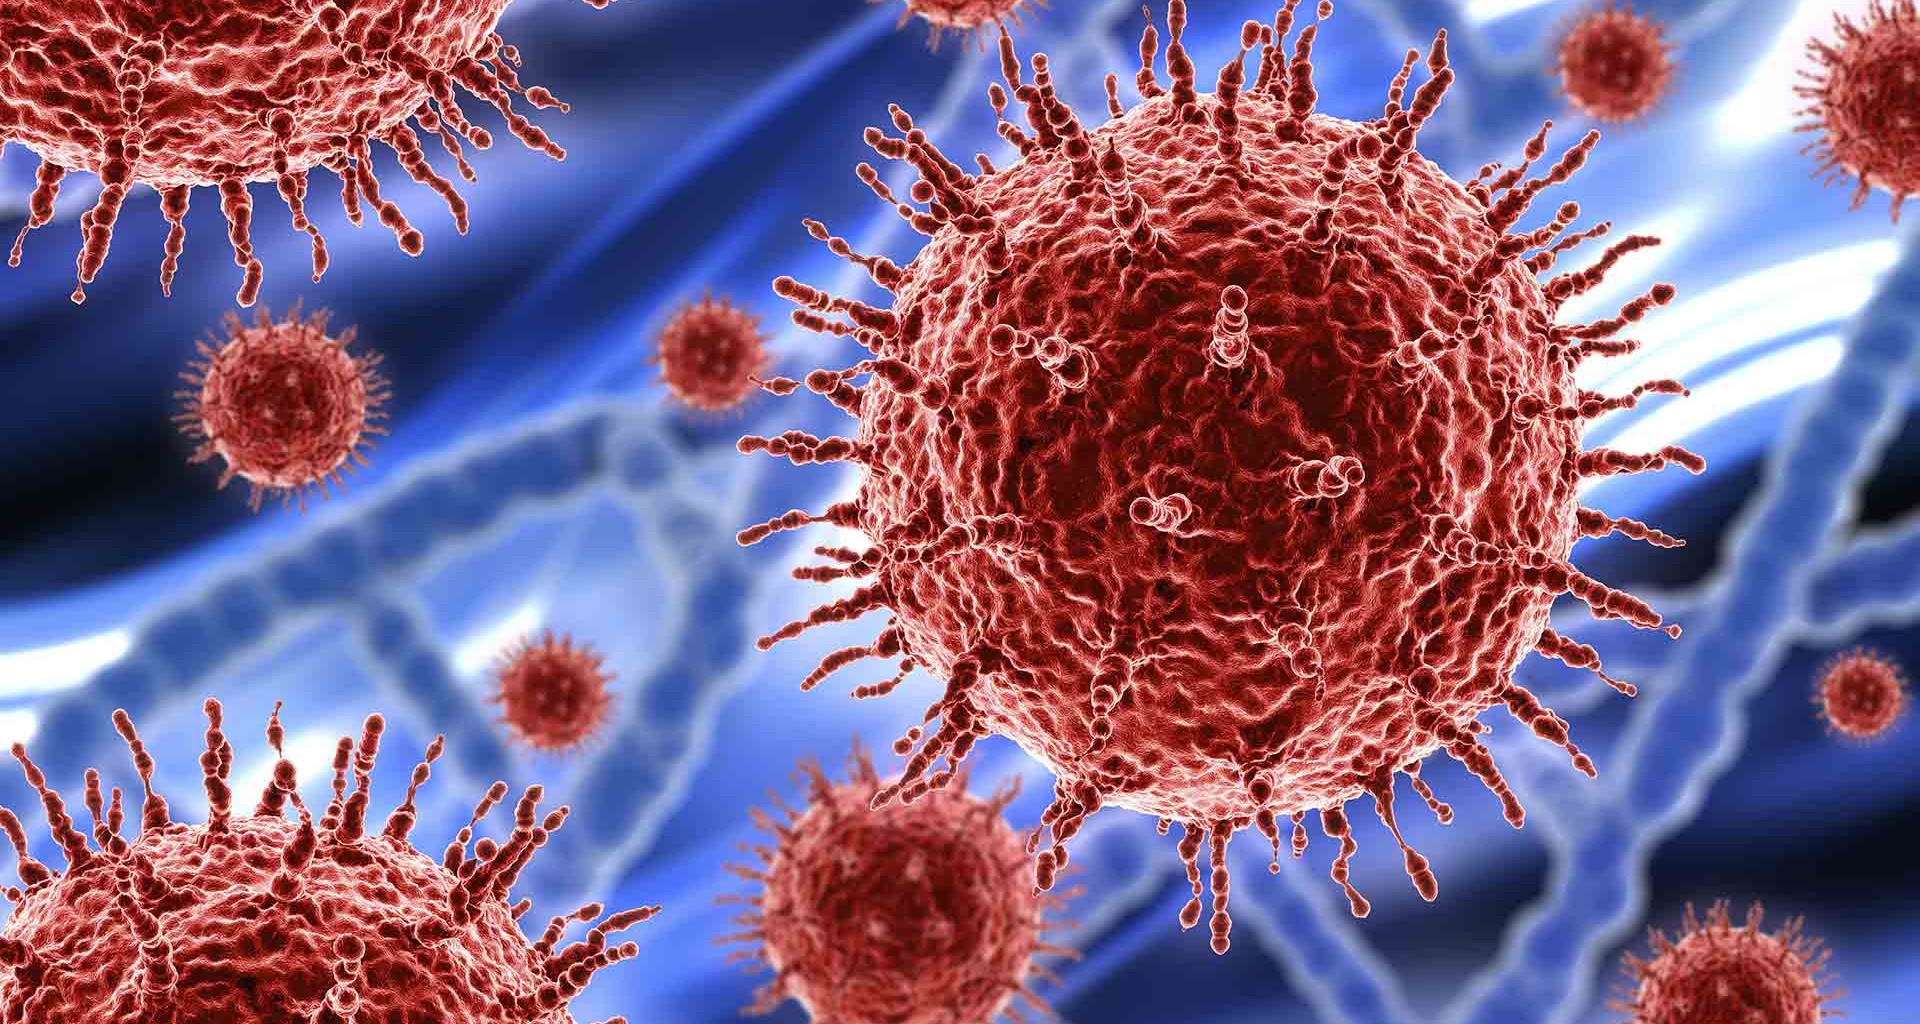 Coronavirus de Wuhan: todo lo que necesitas saber